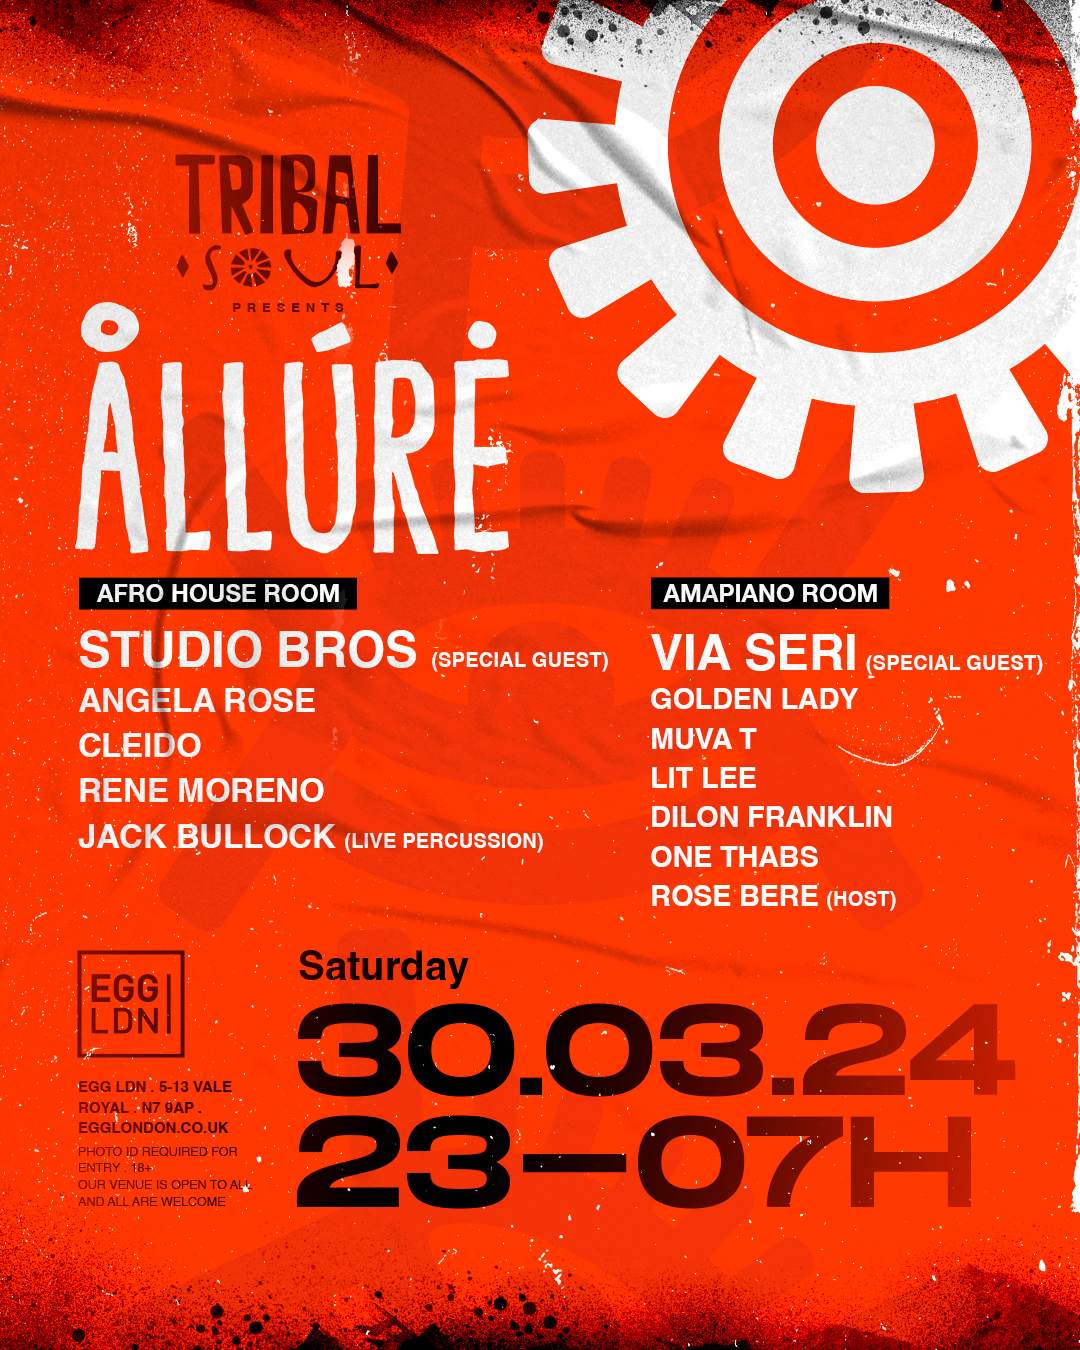 EGG X TRIBAL SOUL present: ÅLLÚRĖ w/ Studio Bros, CLEIDO, VIA SERII - Página frontal